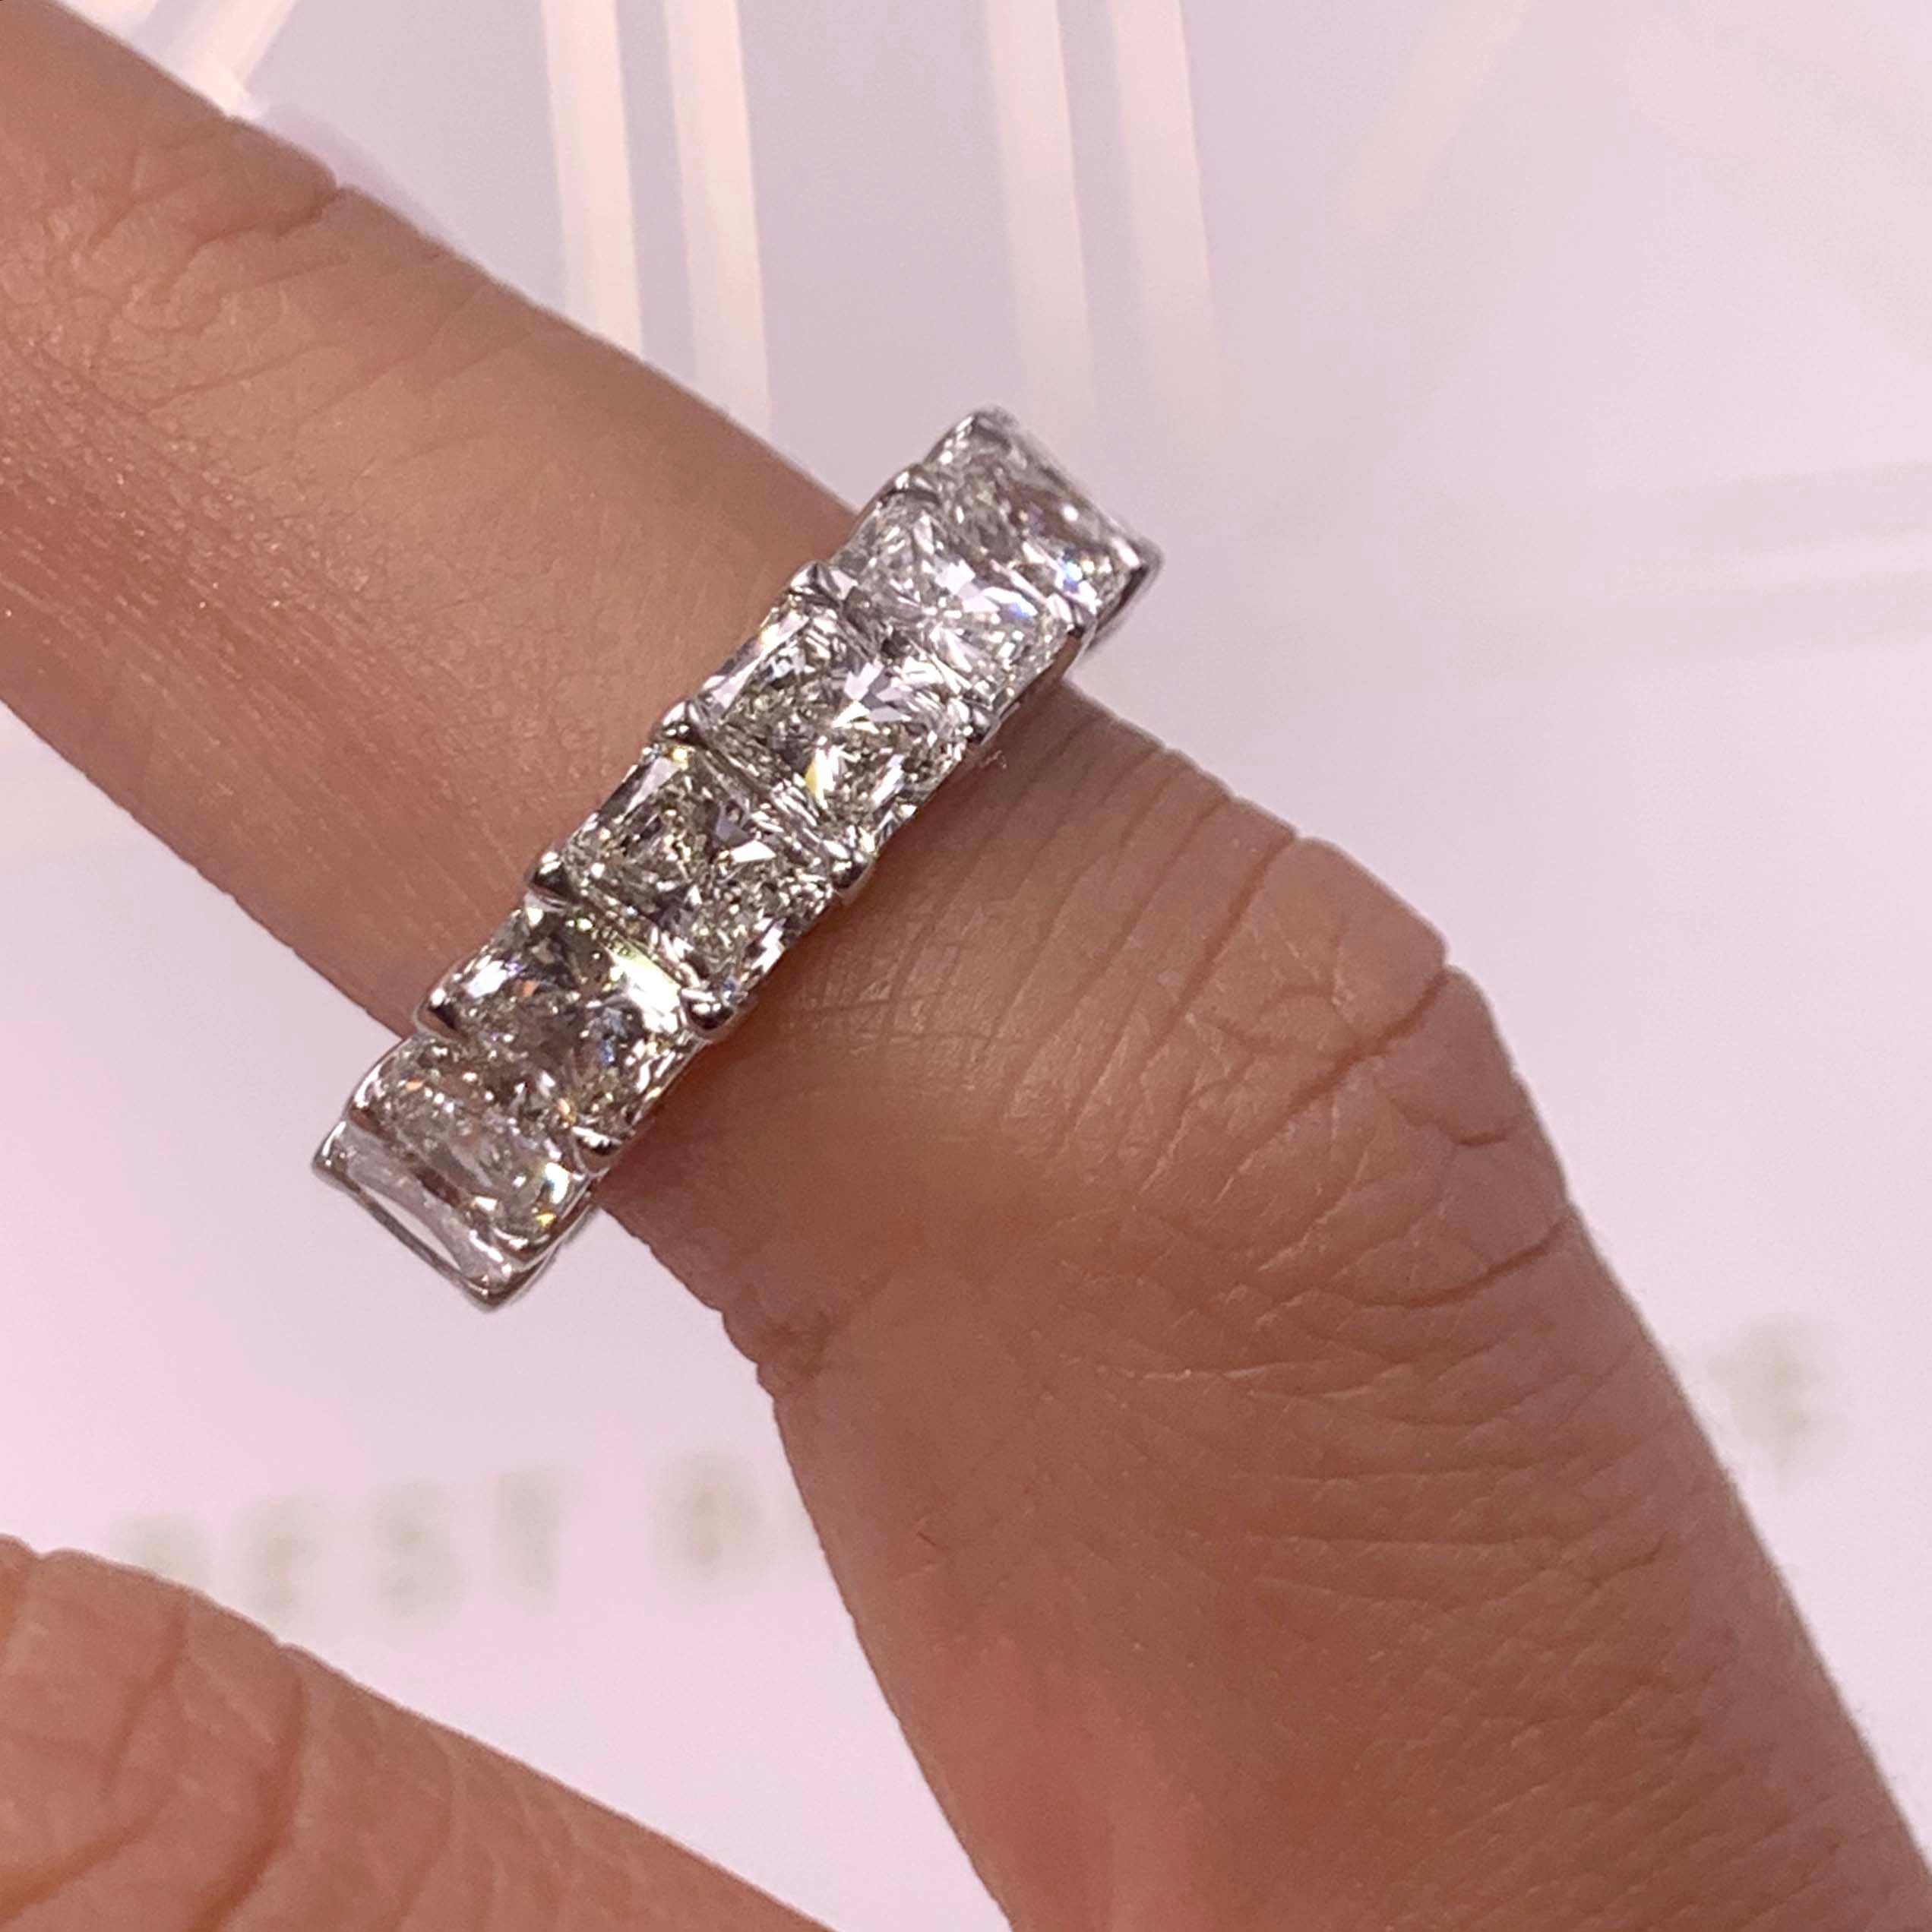 Andi Lab Grown Eternity Wedding Ring   (6 Carat) - 18K White Gold